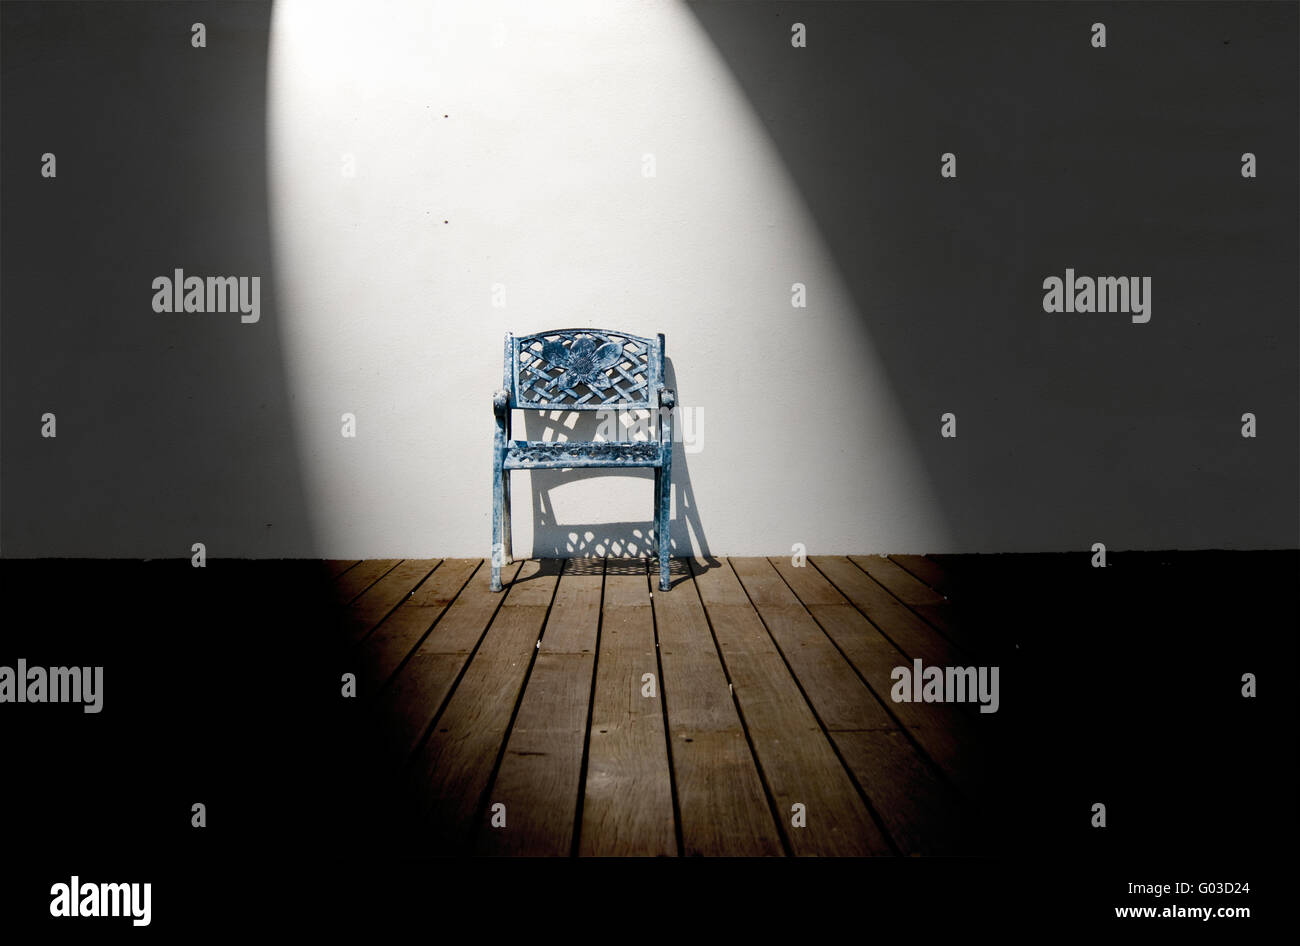 Spotlight on single iron chair on wooden floor Stock Photo